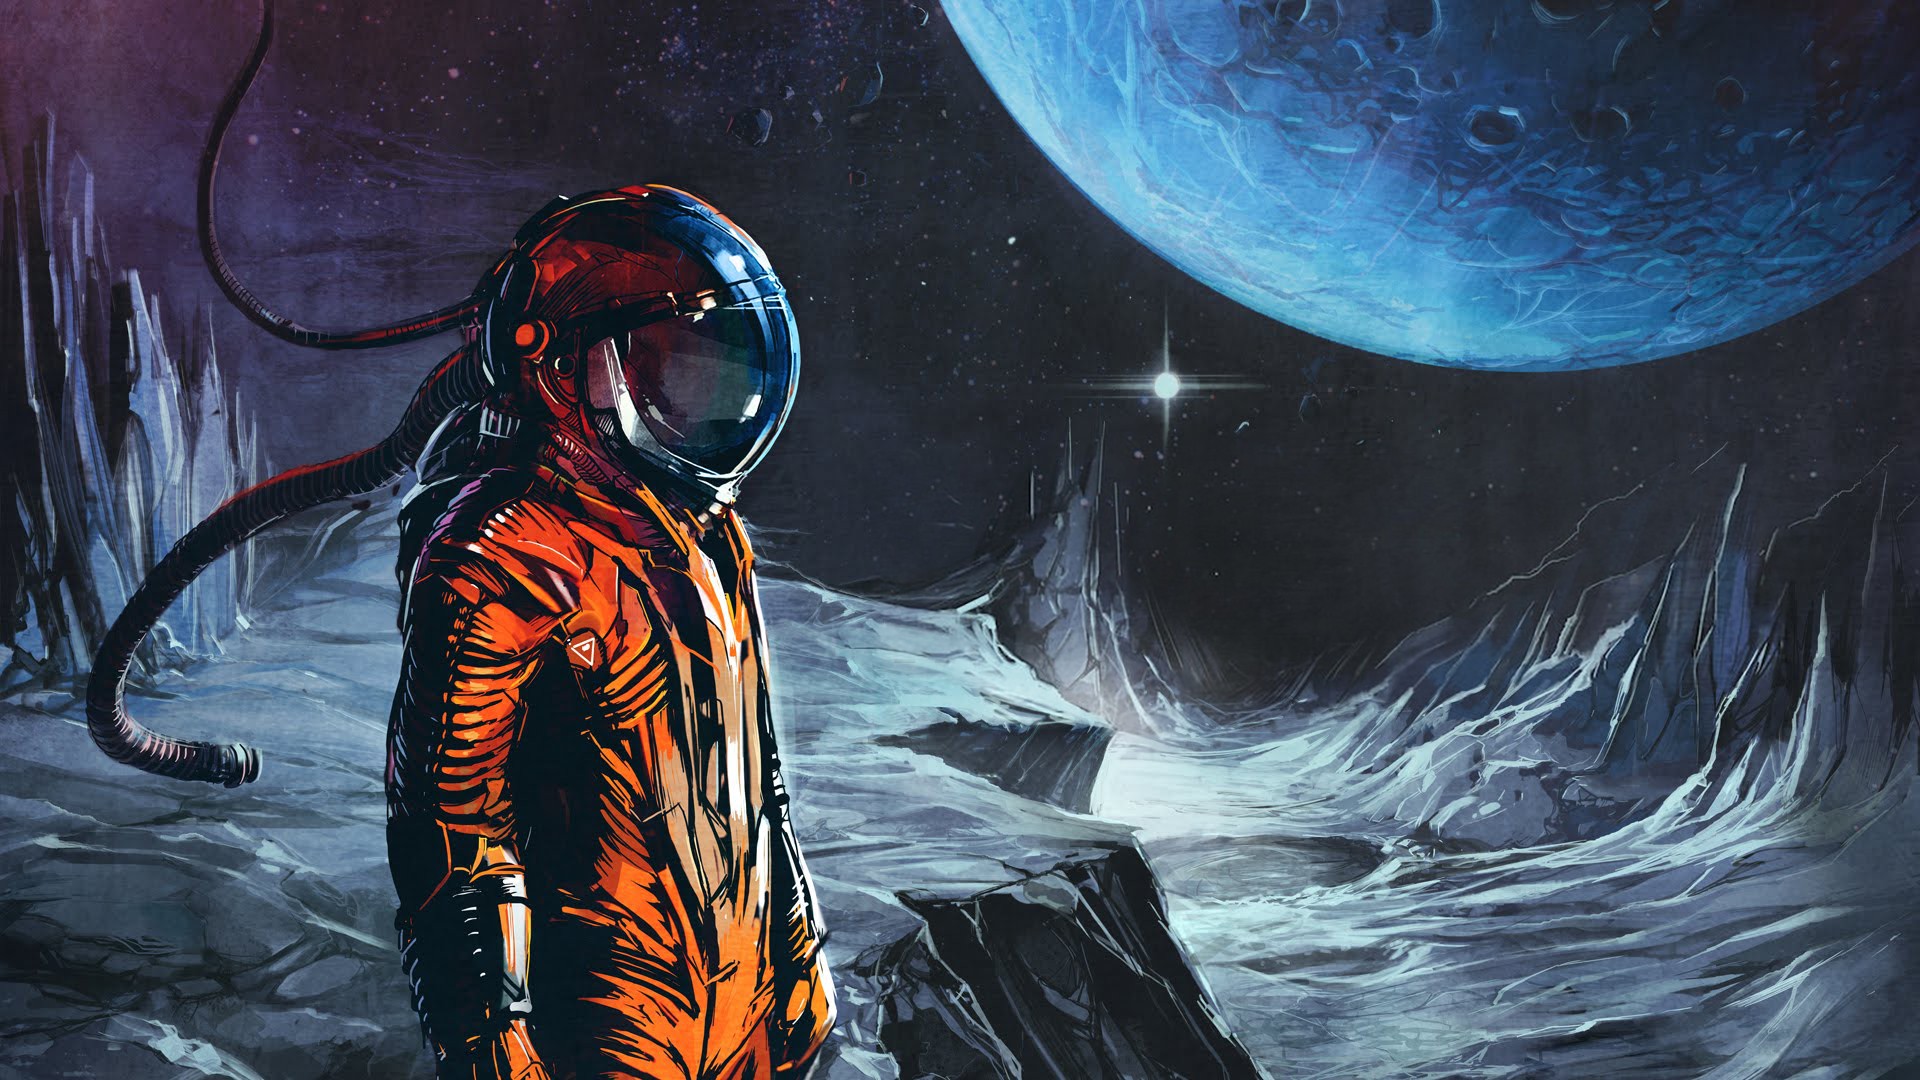 Space Suit Fantasy Art Science Fiction Wallpaper